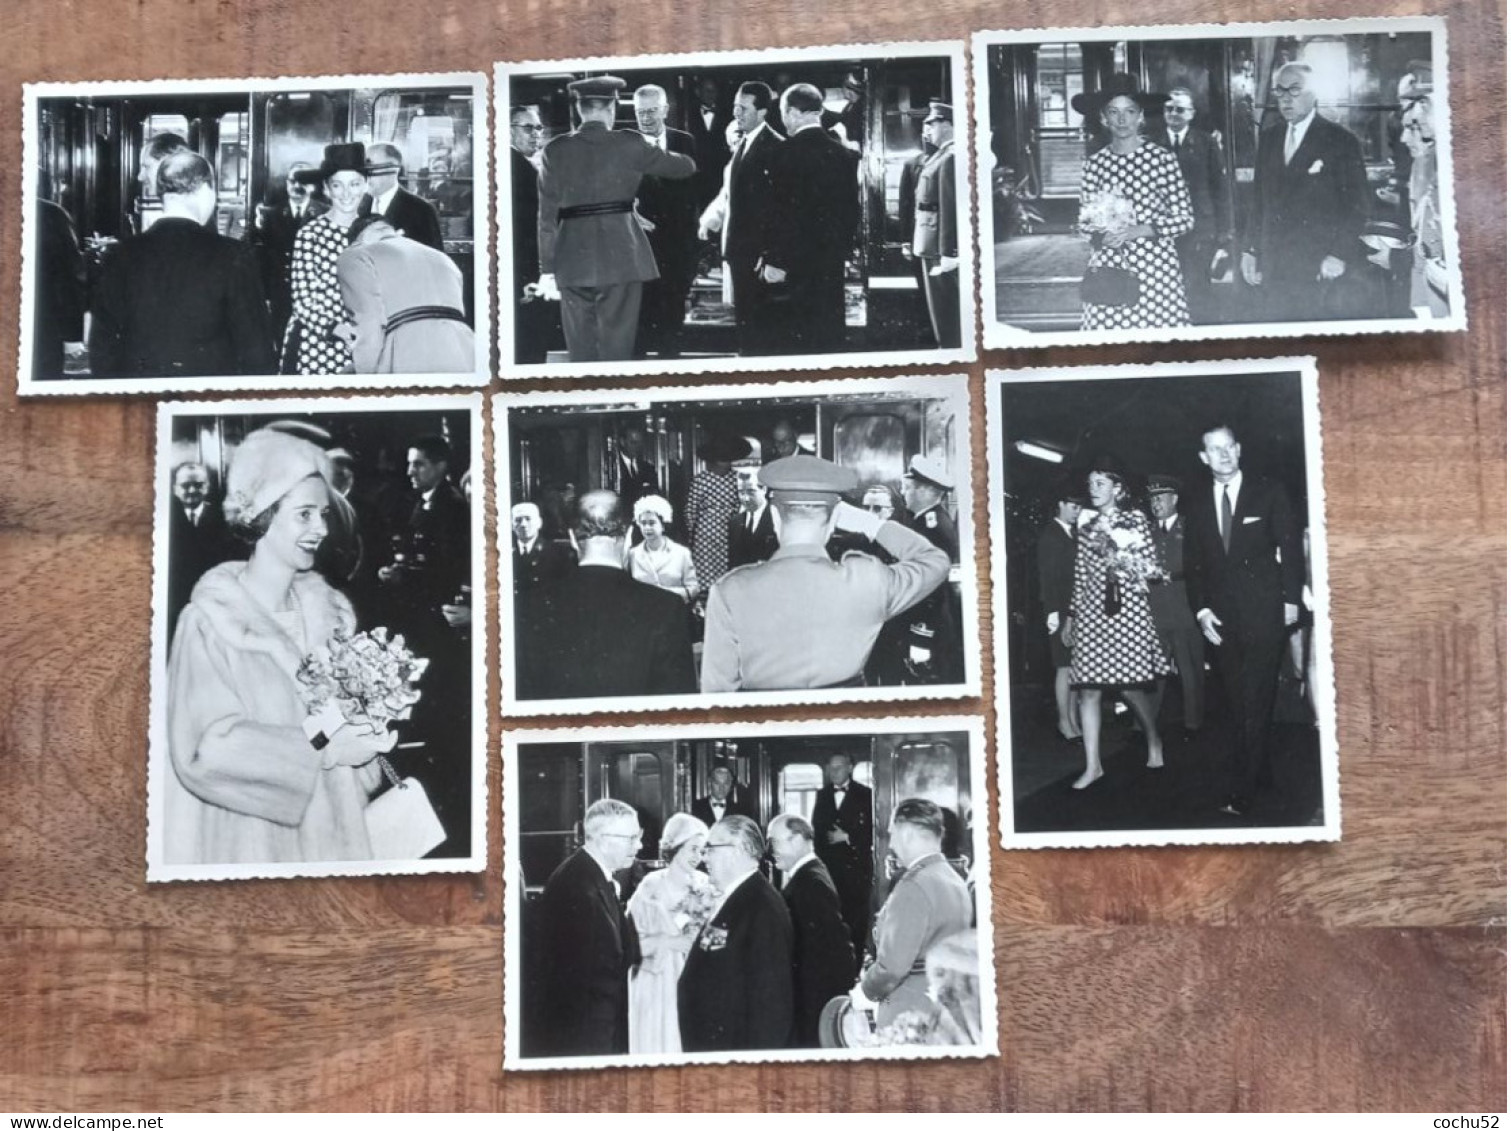 7 Photos N/b---Visite Royale : Au Printemps 1966, Liège Accueillait Elisabeth II (12,5cm X 8,5 Cm) - Famous People